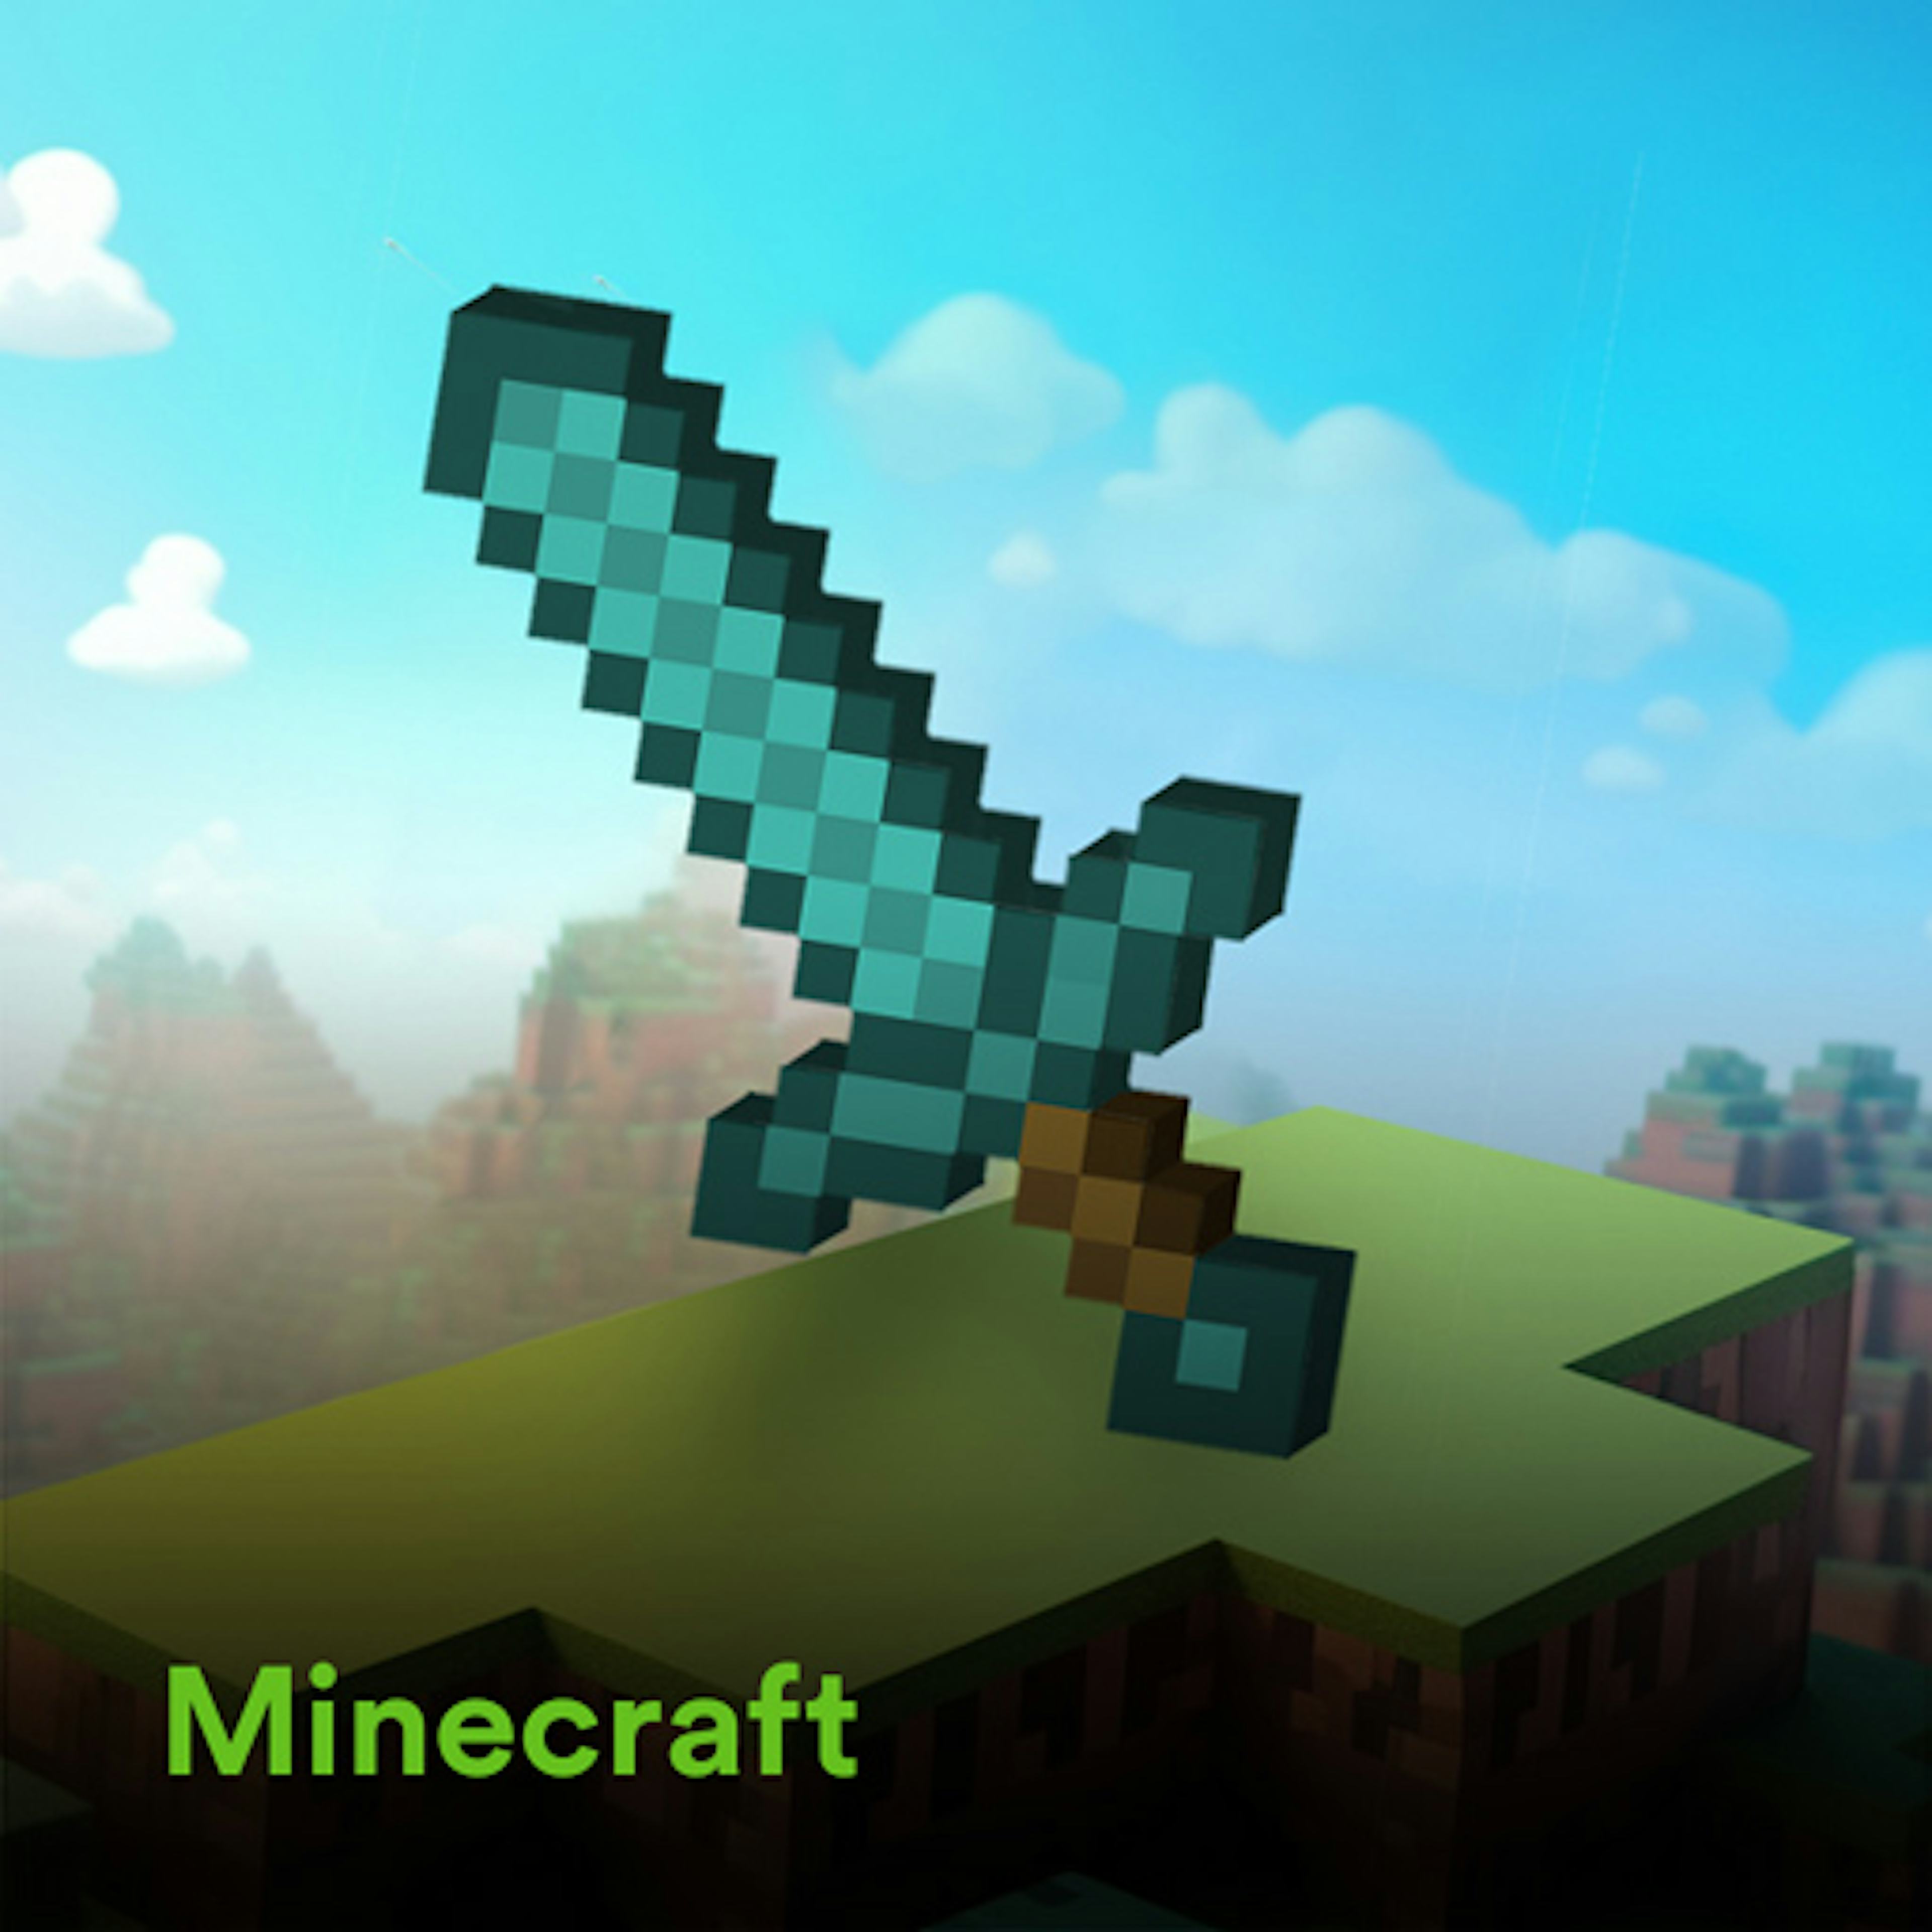 Minecraft artwork